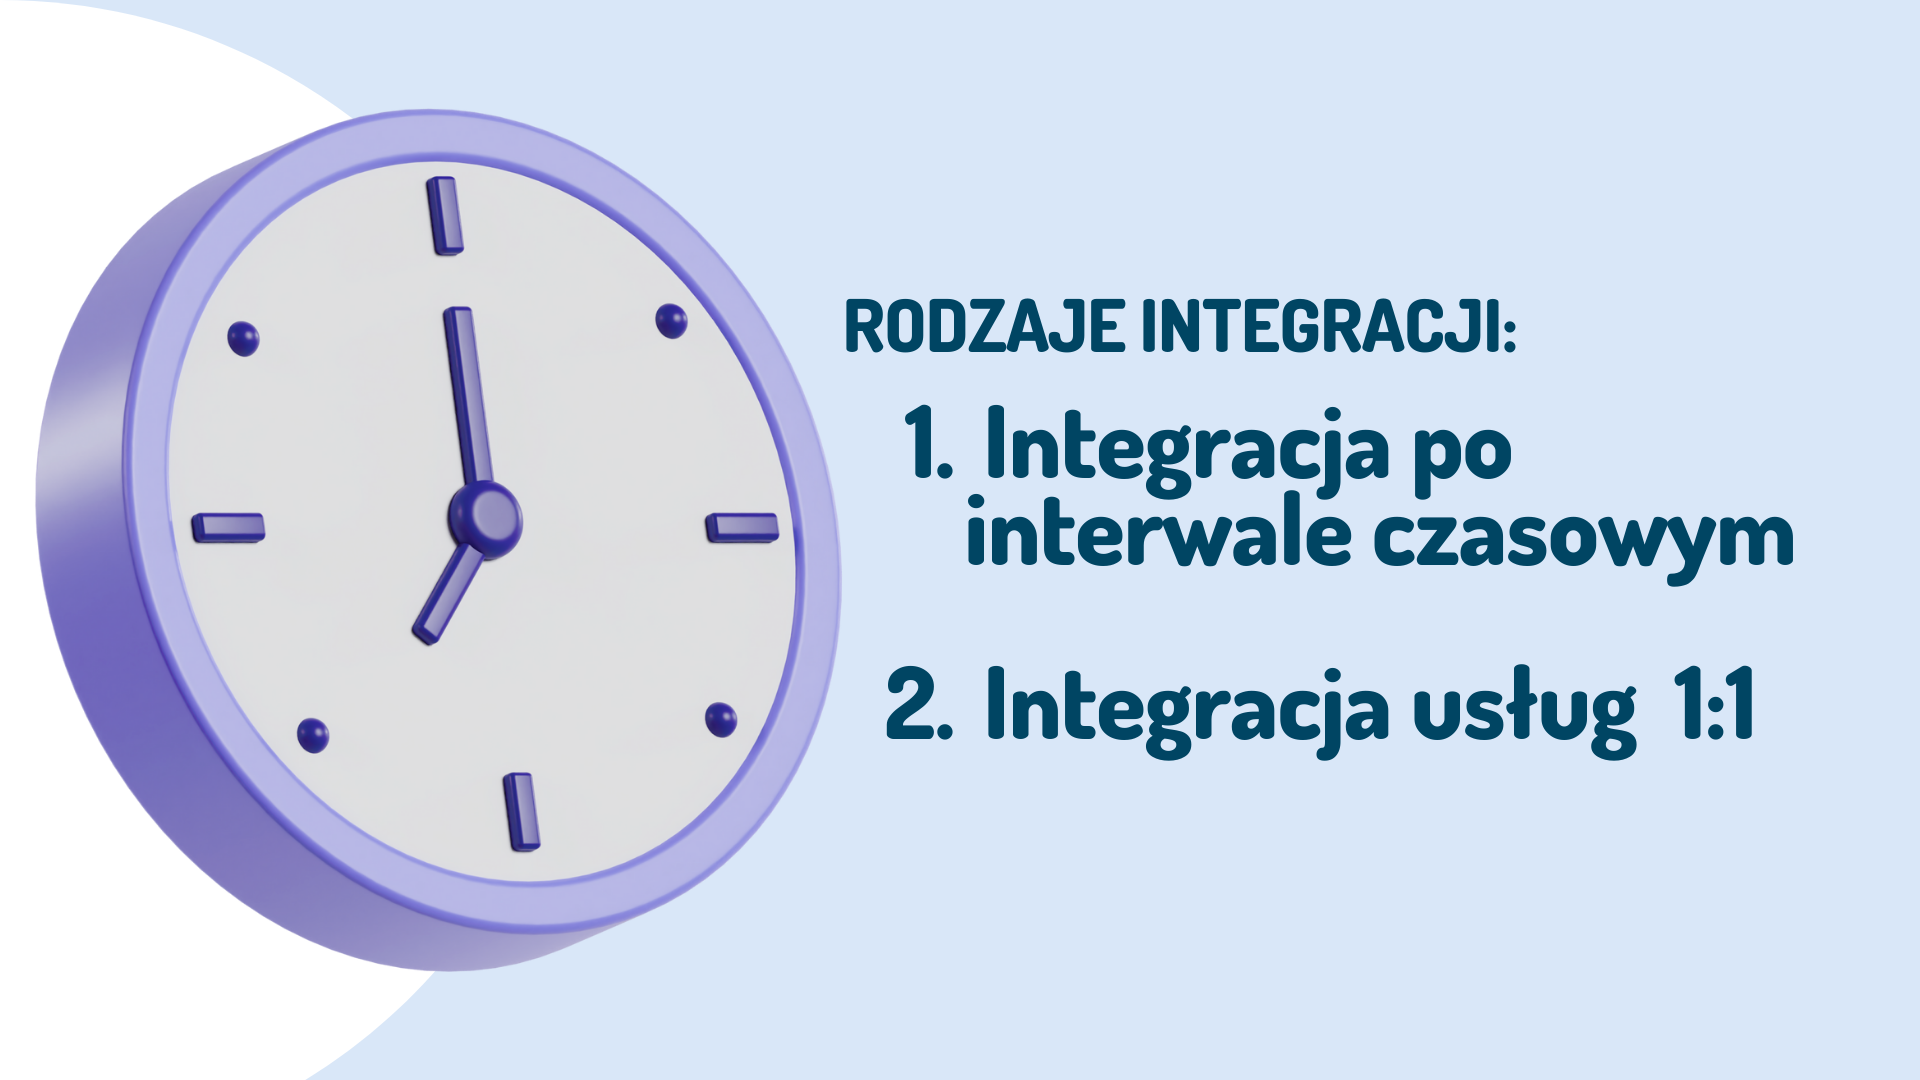 fioletowy zegar na niebieskim tle po prawej stronie napis rodzaje integracji: po interwale czasowy i usług 1:1